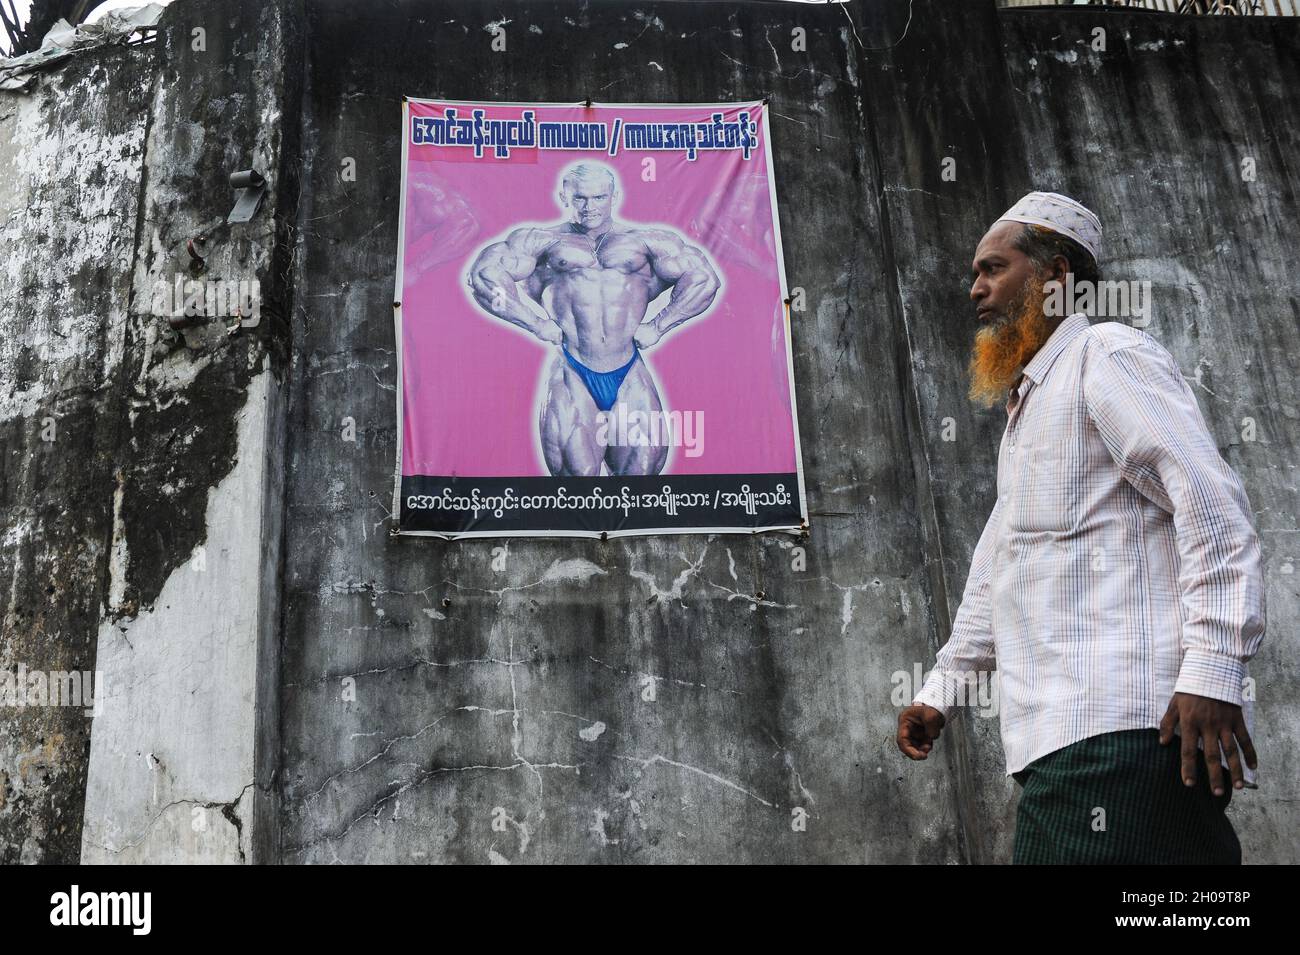 '11.10.2013, Myanmar, , Yangon - Ein muslimischer Mann mit einem traditionellen takke geht an einer Wand vorbei und zeigt ein Plakat, das für ein Bodybuilding-Event wirbt. 0SL131011D Stockfoto